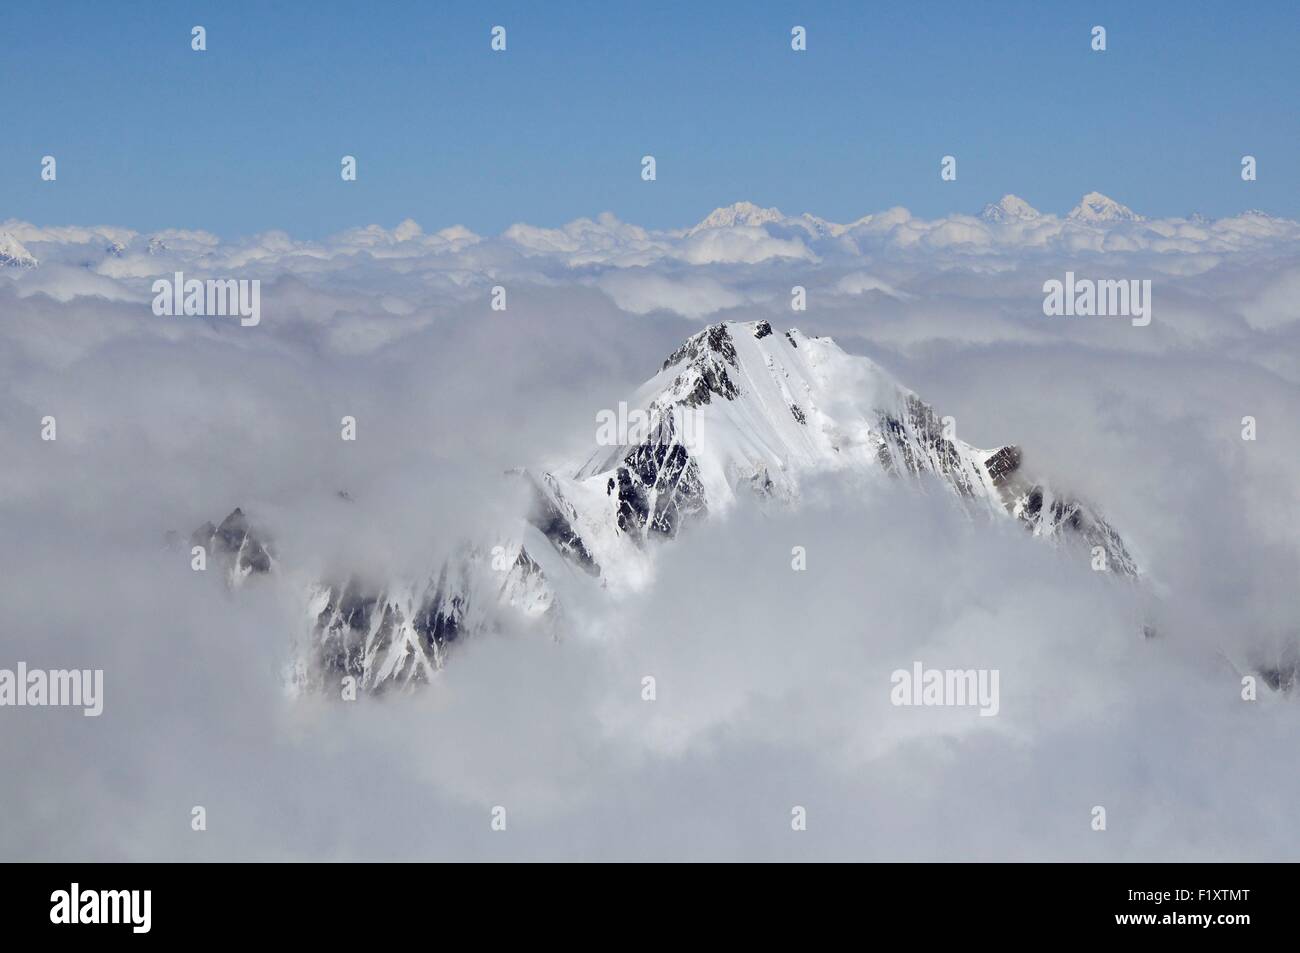 Georgia, Greater Caucasus, Mtskheta-Mtianeti, Mount Kazbek, view from Mount Kazbek summit at 5047m, Mount Elbrus in the background Stock Photo